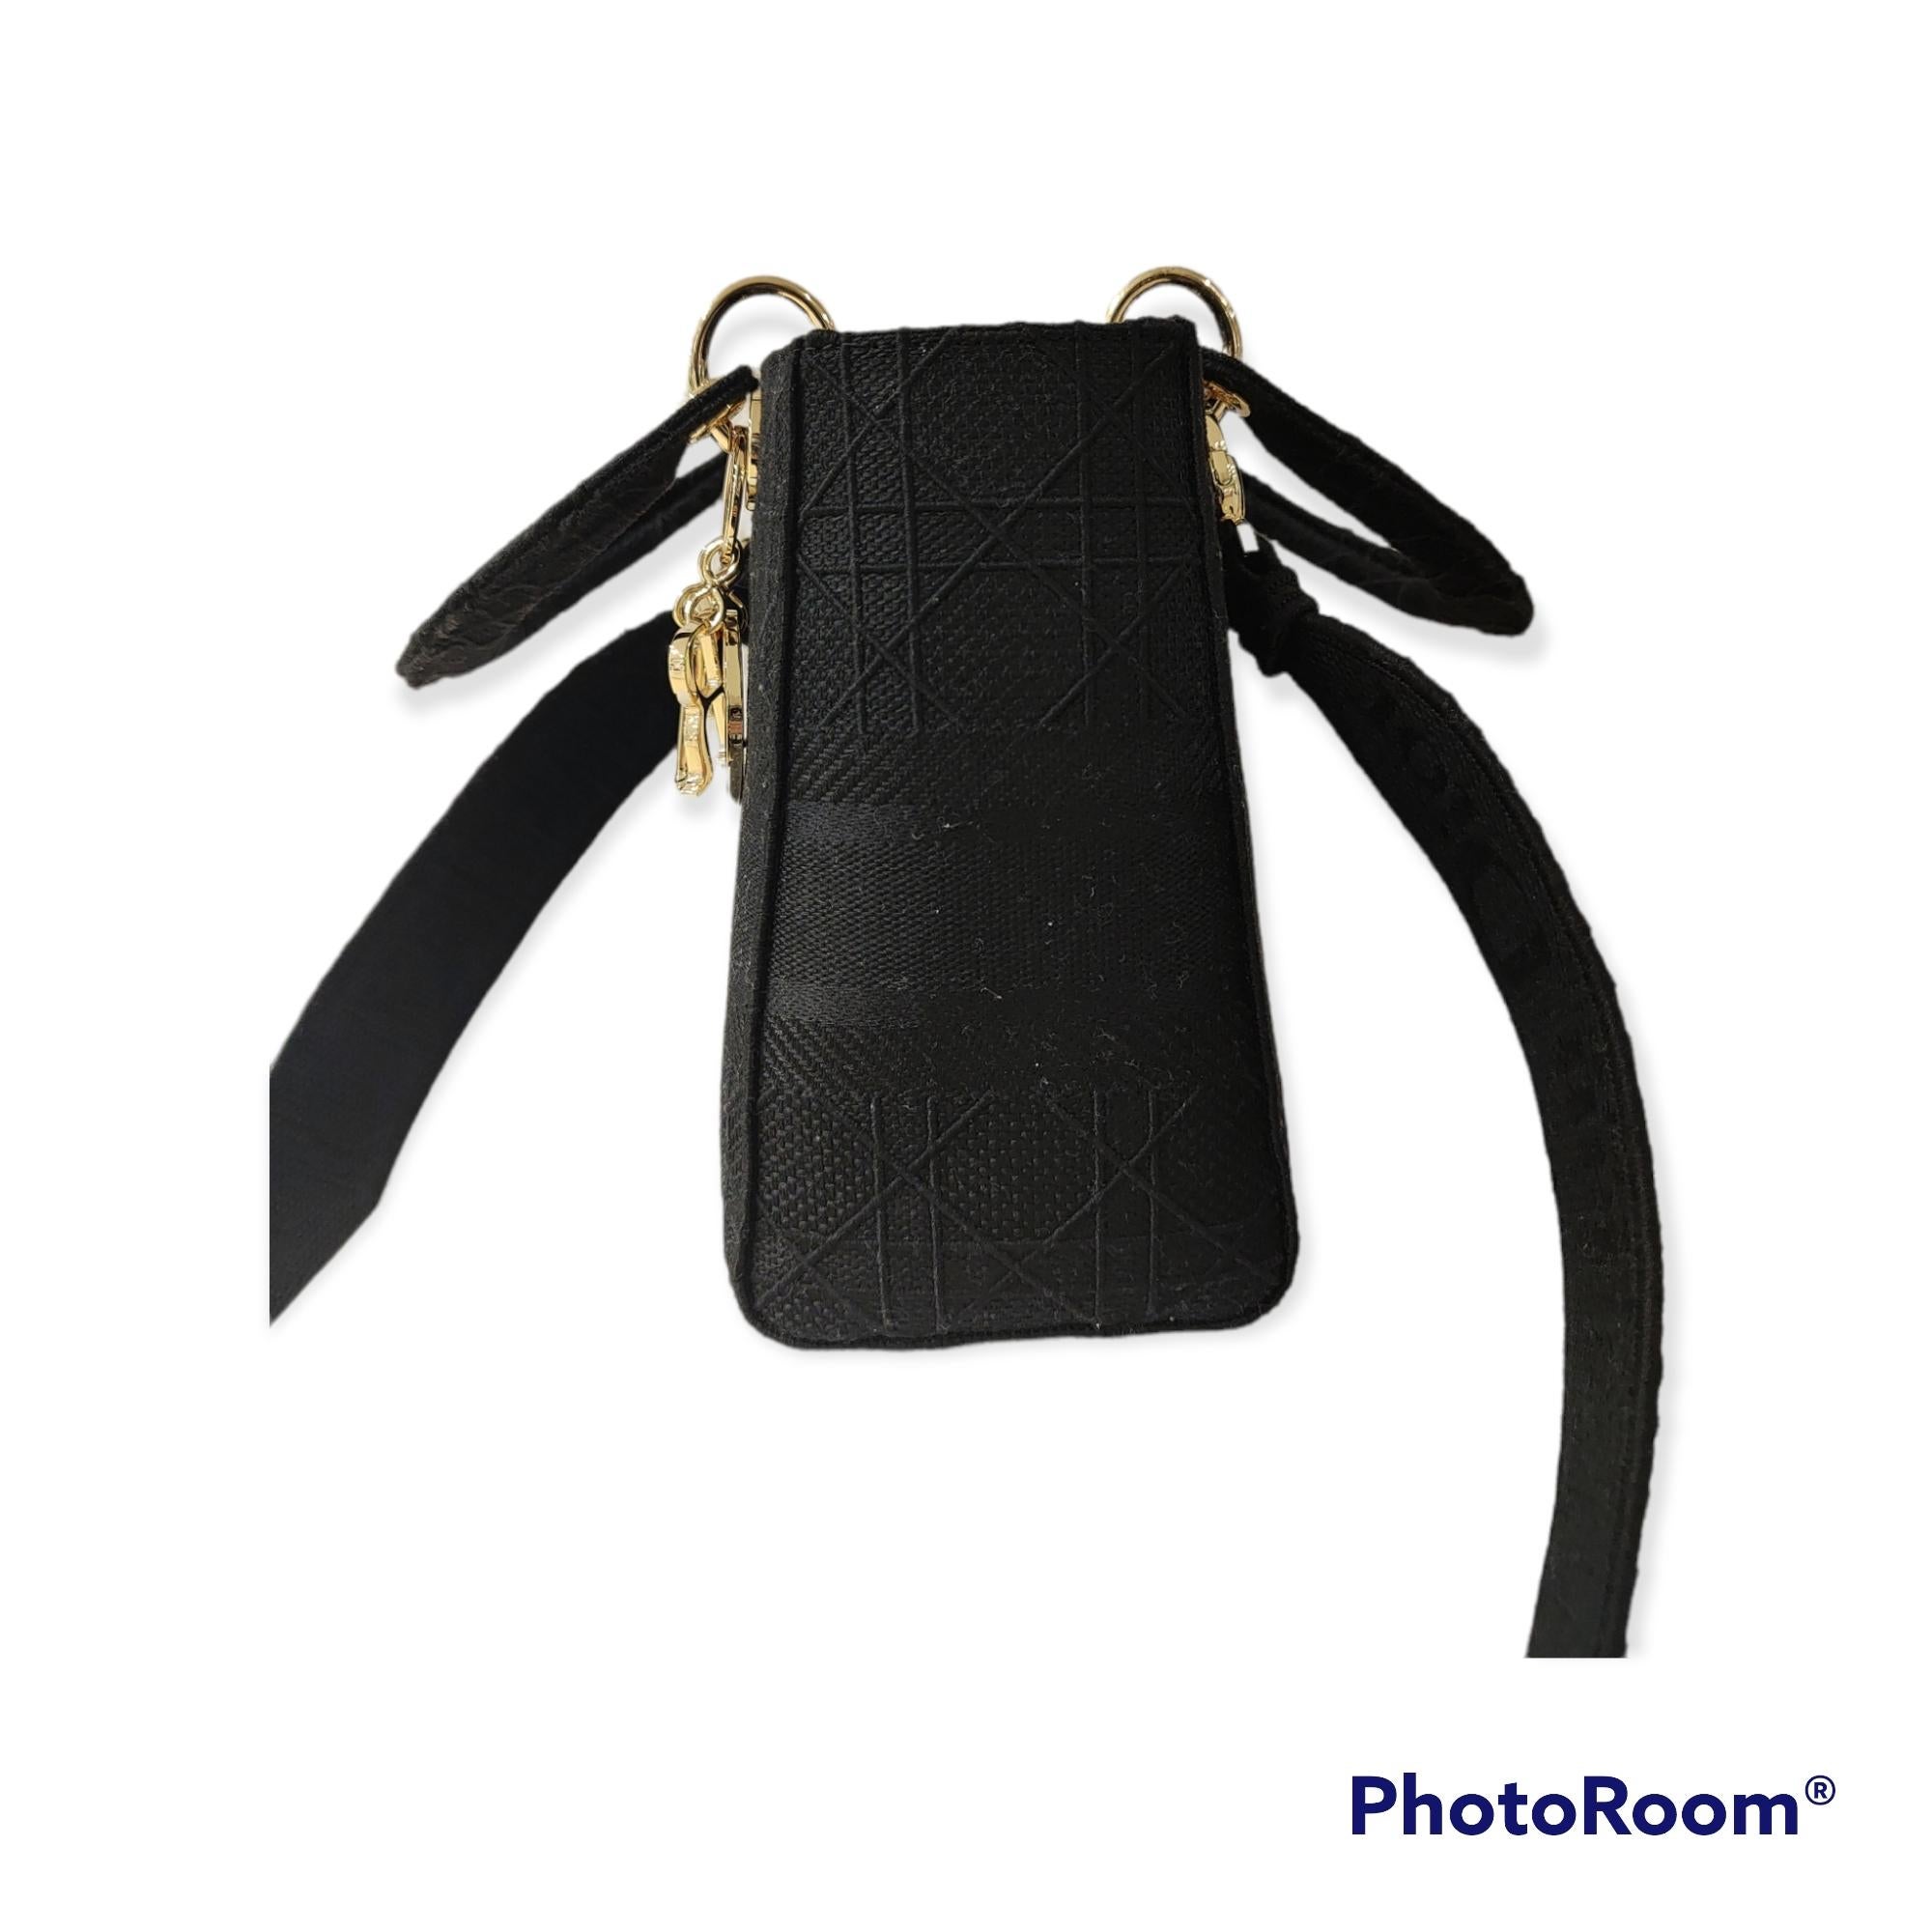 Christian Dior D lite black shoulder handbag
gold tone hardware
shoulder strap inside